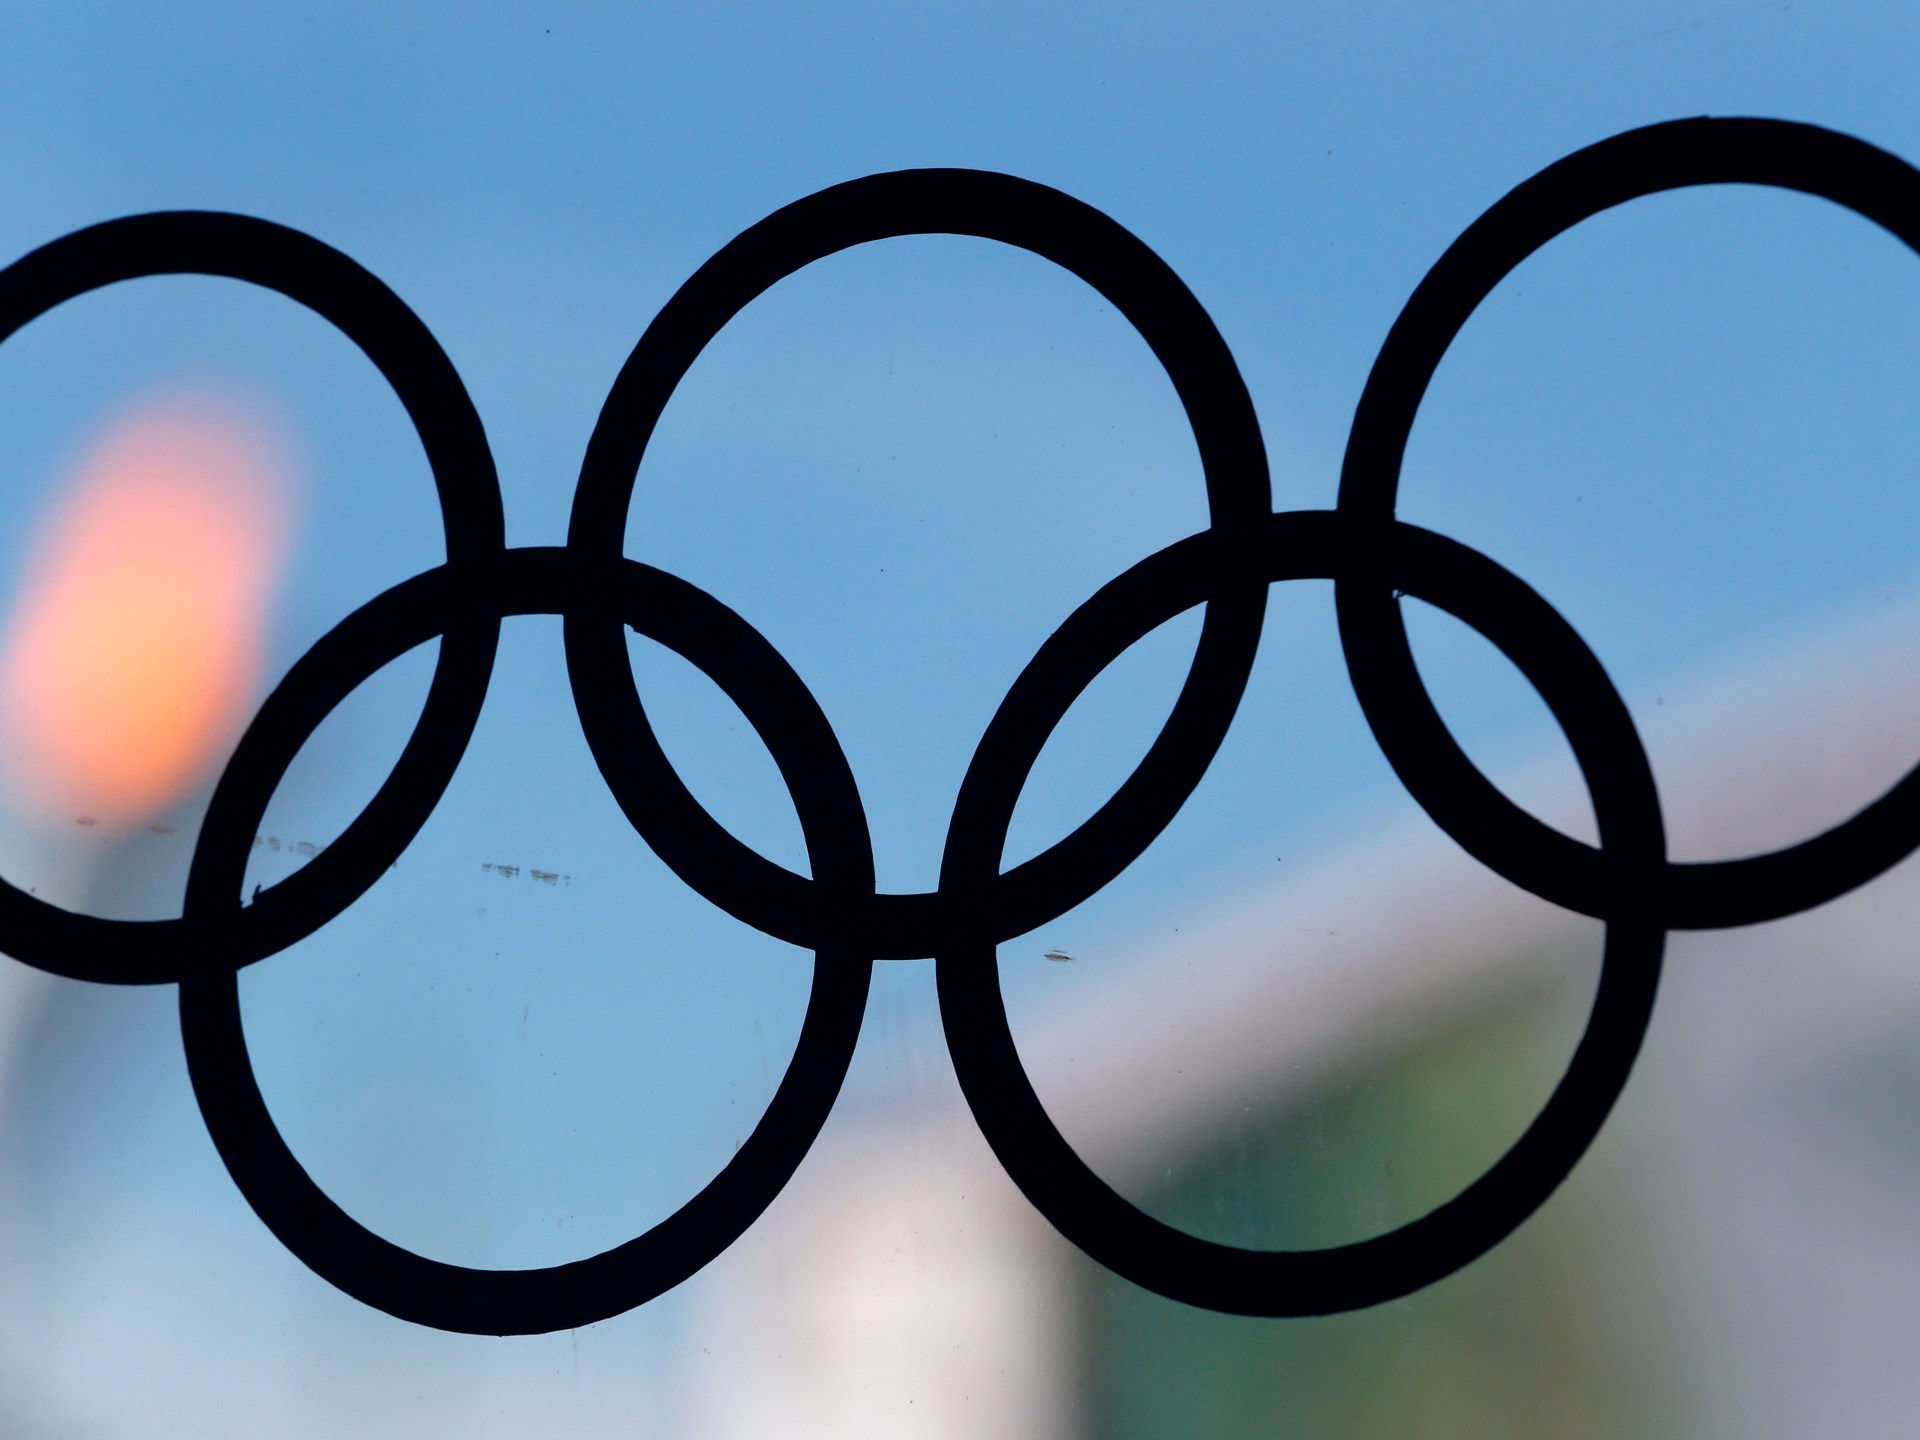 Міжнародний олімпійський комітет вважає Ігри російської дружби «порушенням» Олімпійської хартії  Олімпіада